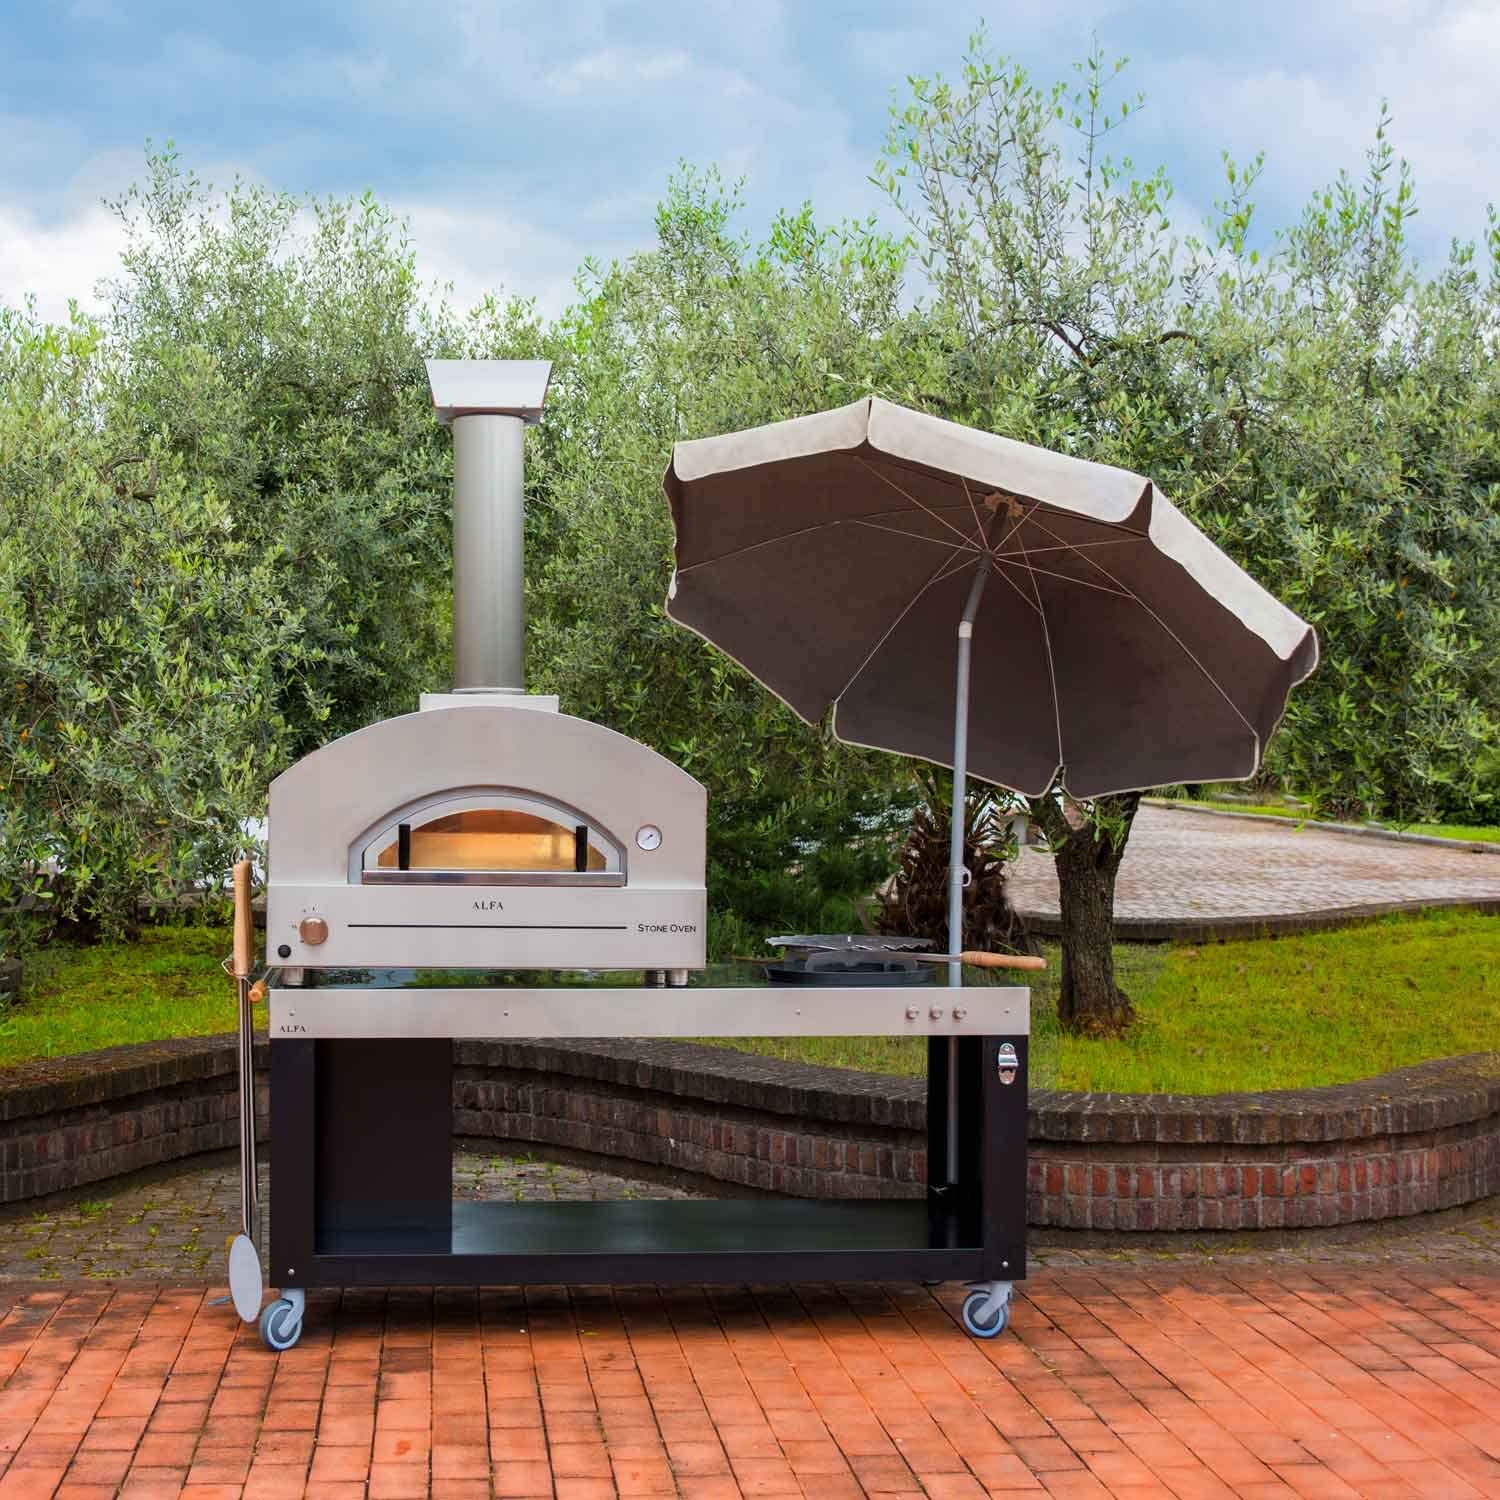 Mediaan referentie Afzonderlijk Pizza oven voor buiten - Barbecueplein